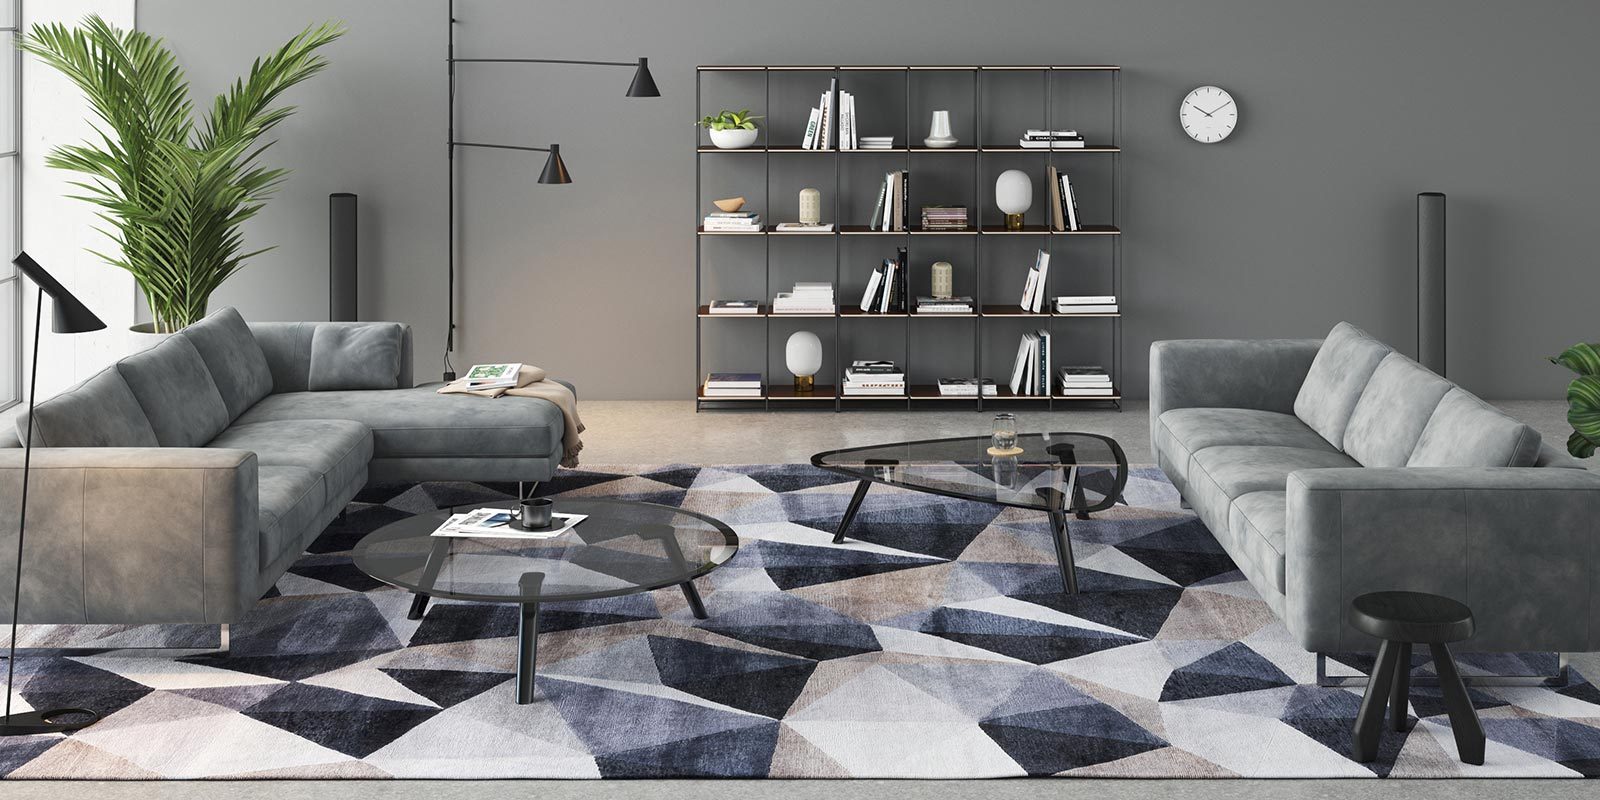 Modernes Wohnzimmer mit einer L-förmigen grauen Couch, runden Glastischen auf einem geometrischen Teppich, Regalen mit Büchern und Dekor an der Wand, Pflanzen und einem großen Fenster mit Stadtansicht.